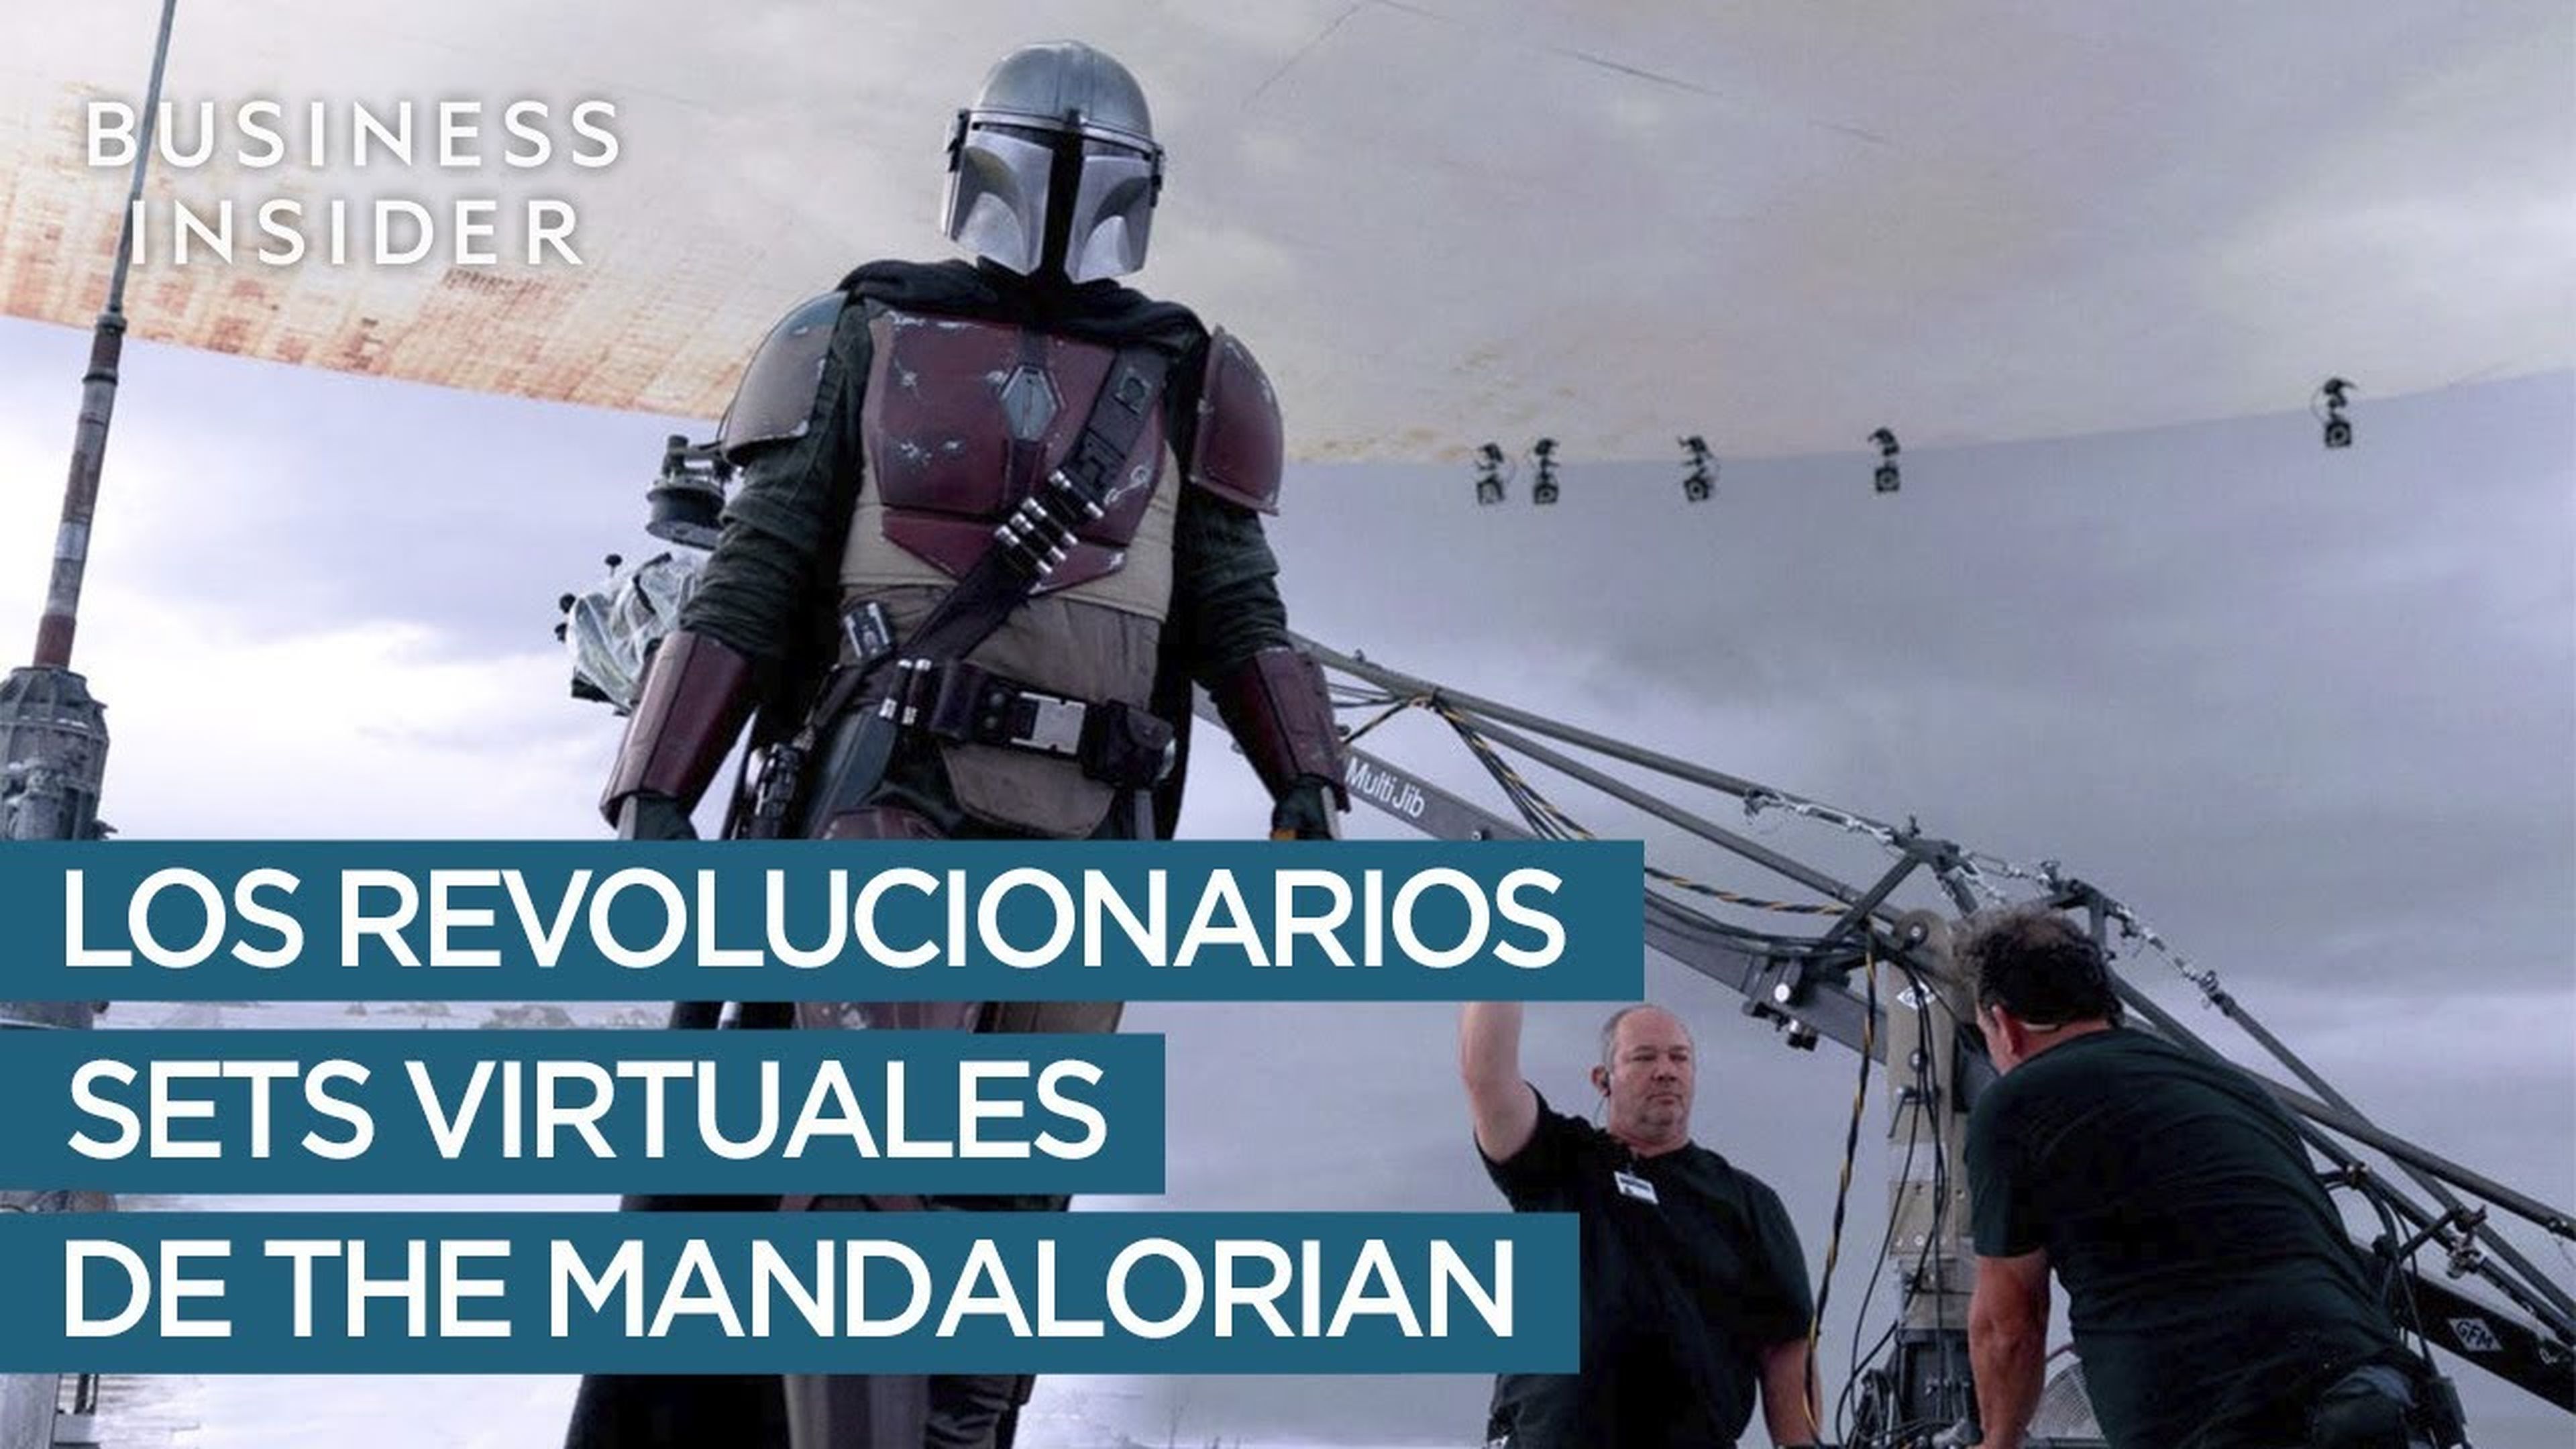 Los revolucionarios sets virtuales de The Mandalorian